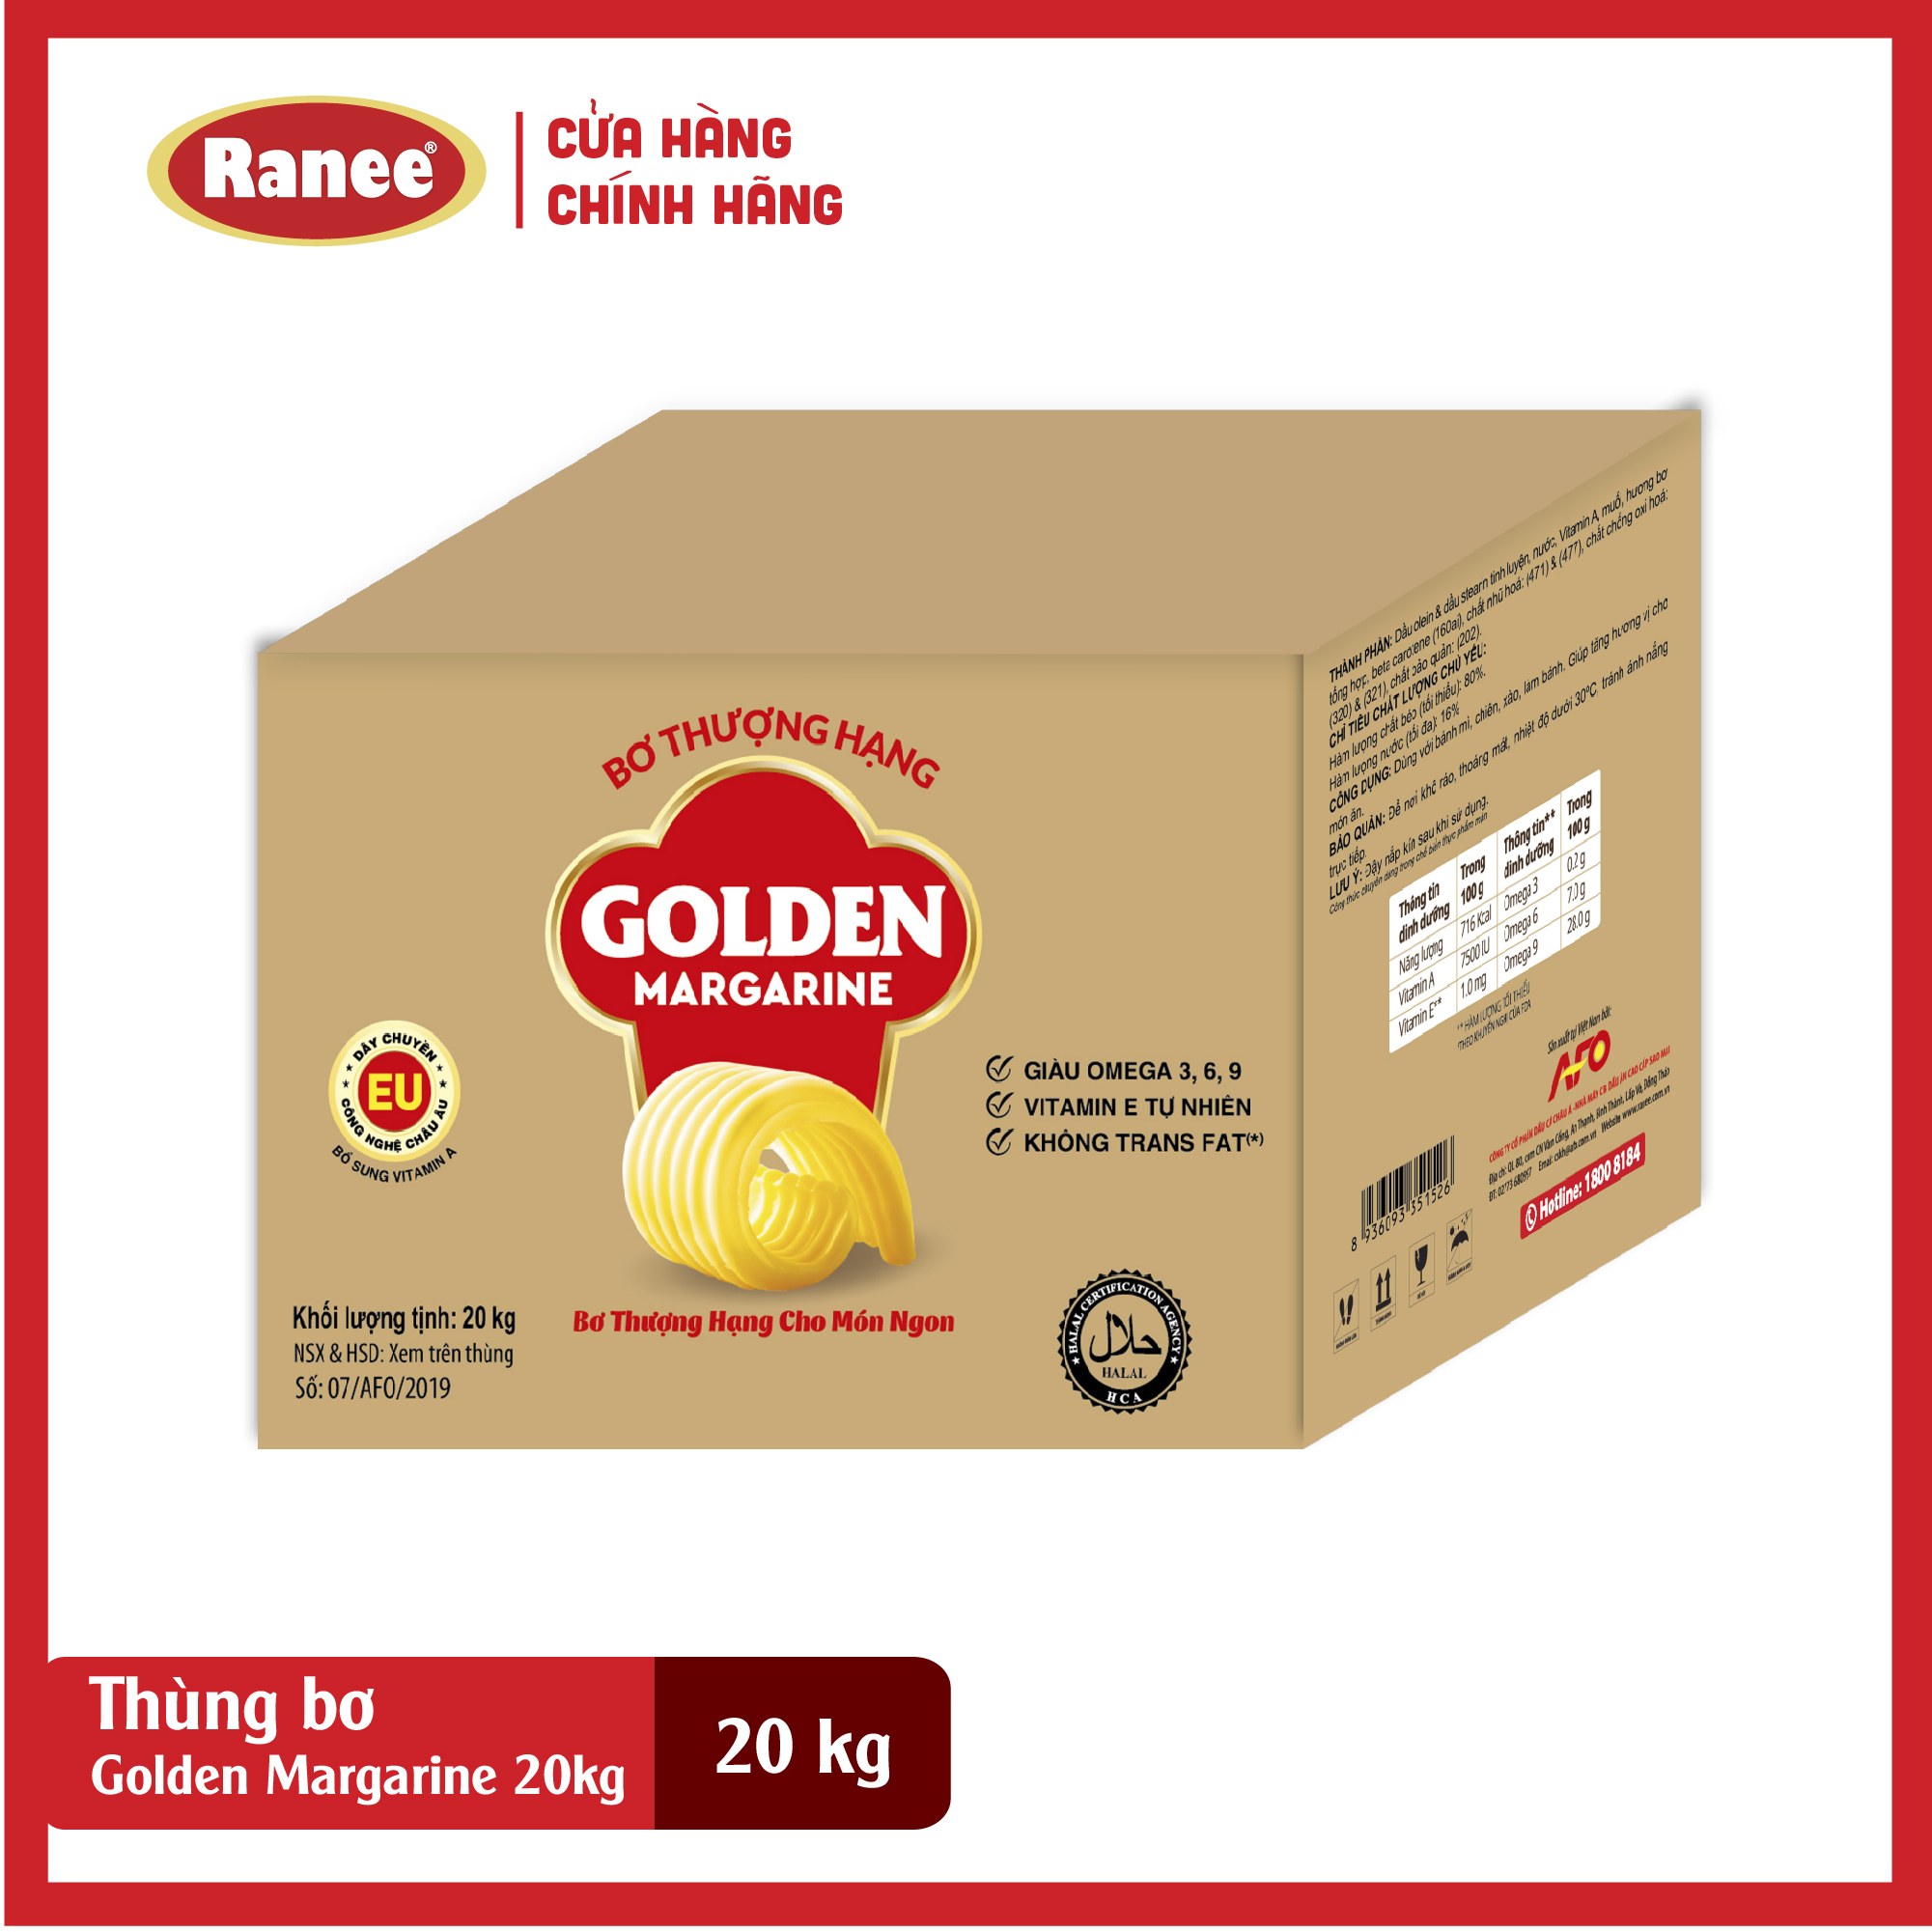 Bơ Thượng Hạng Golden Margarine 20kg